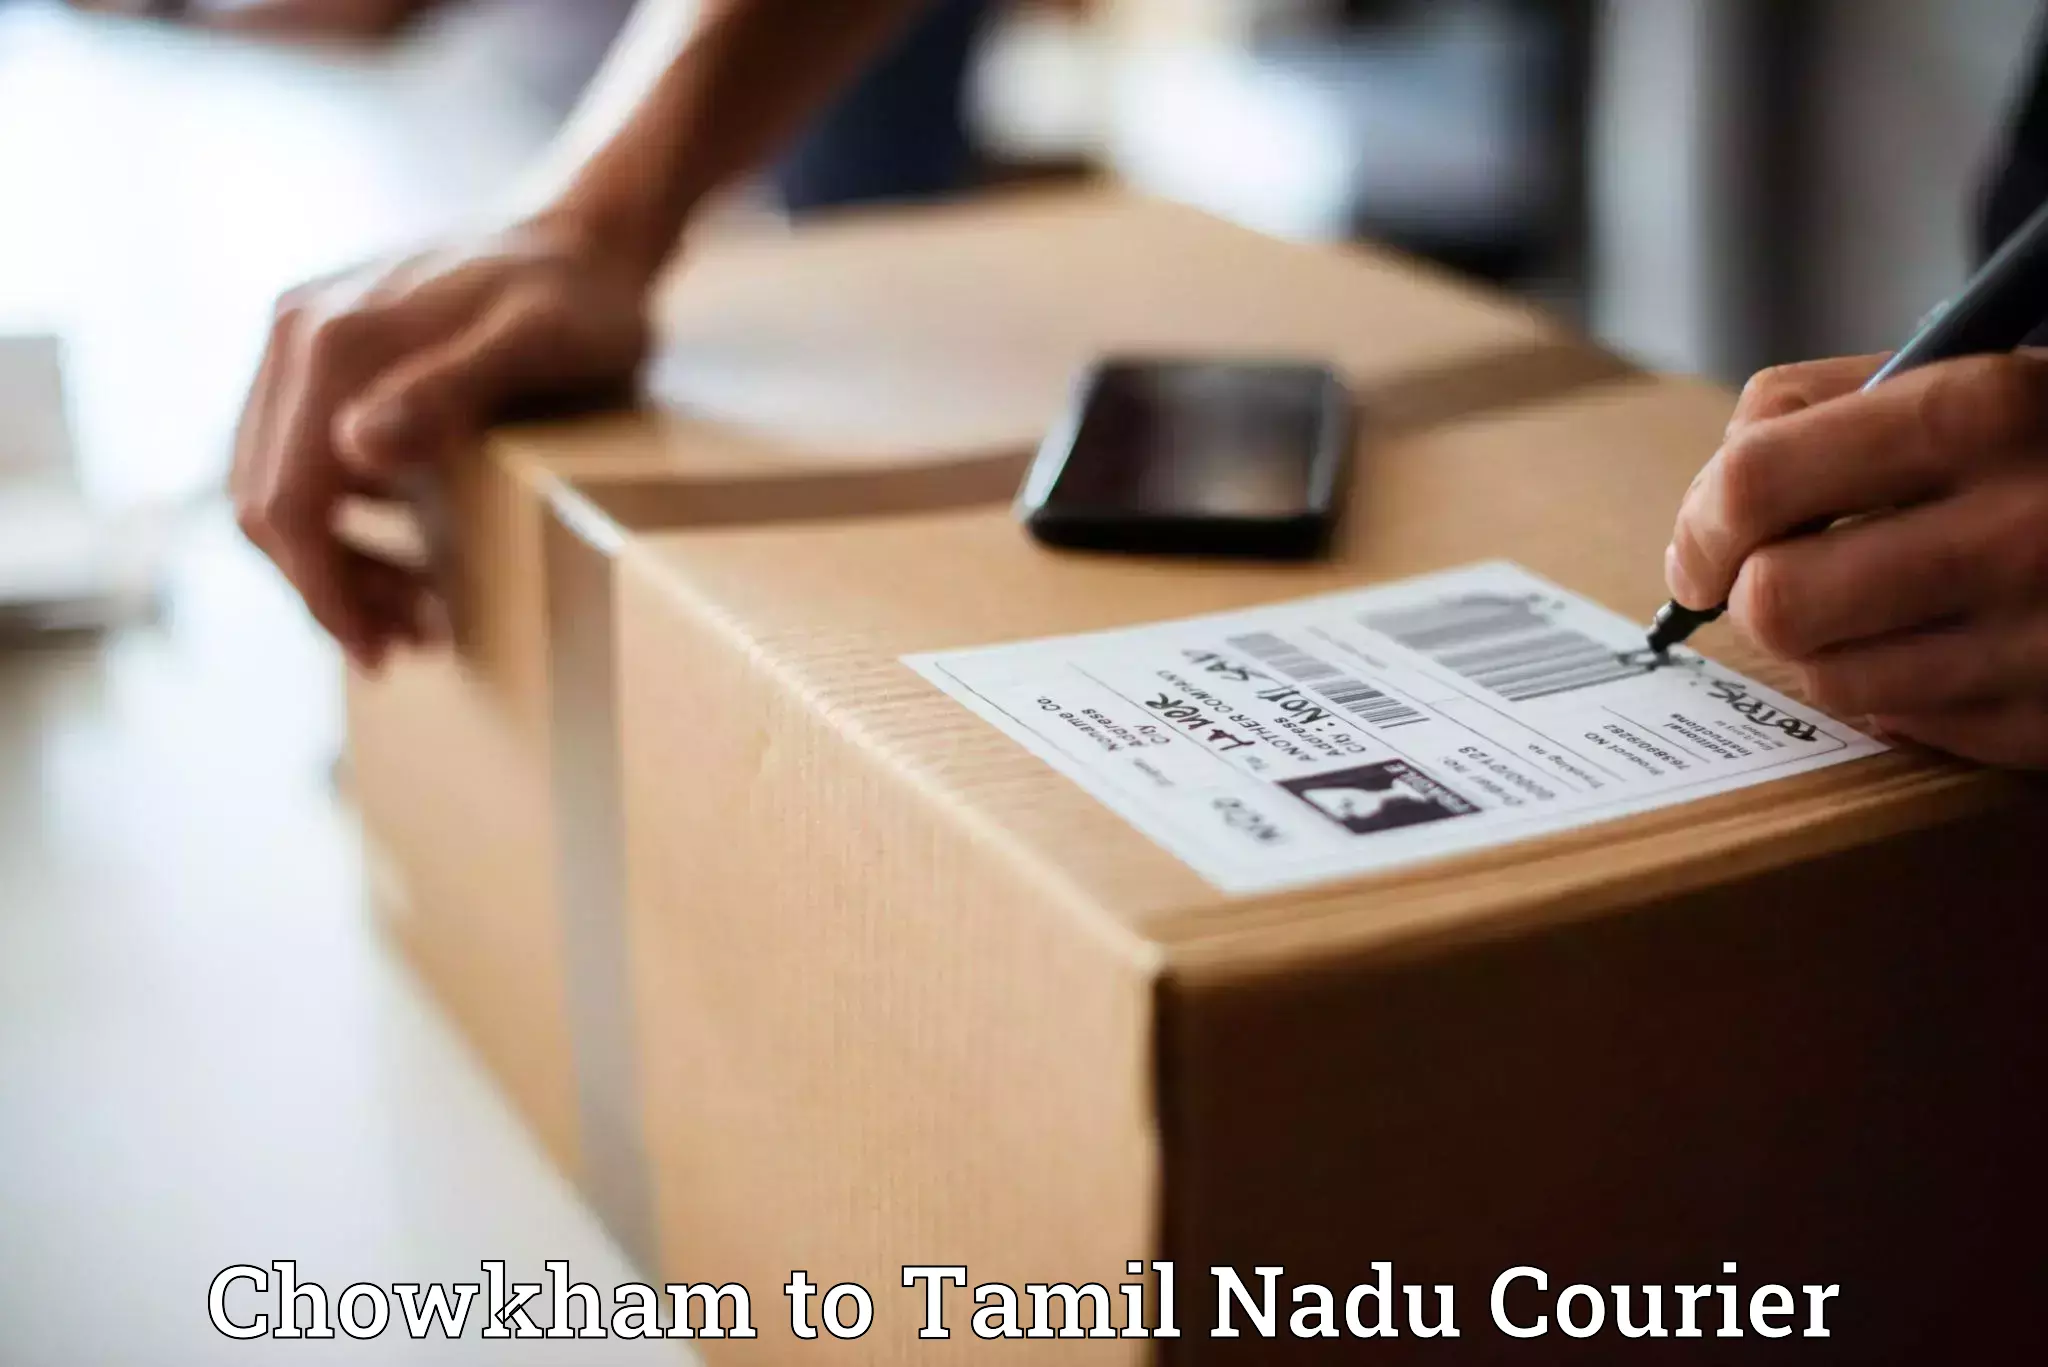 Nationwide courier service Chowkham to Villupuram